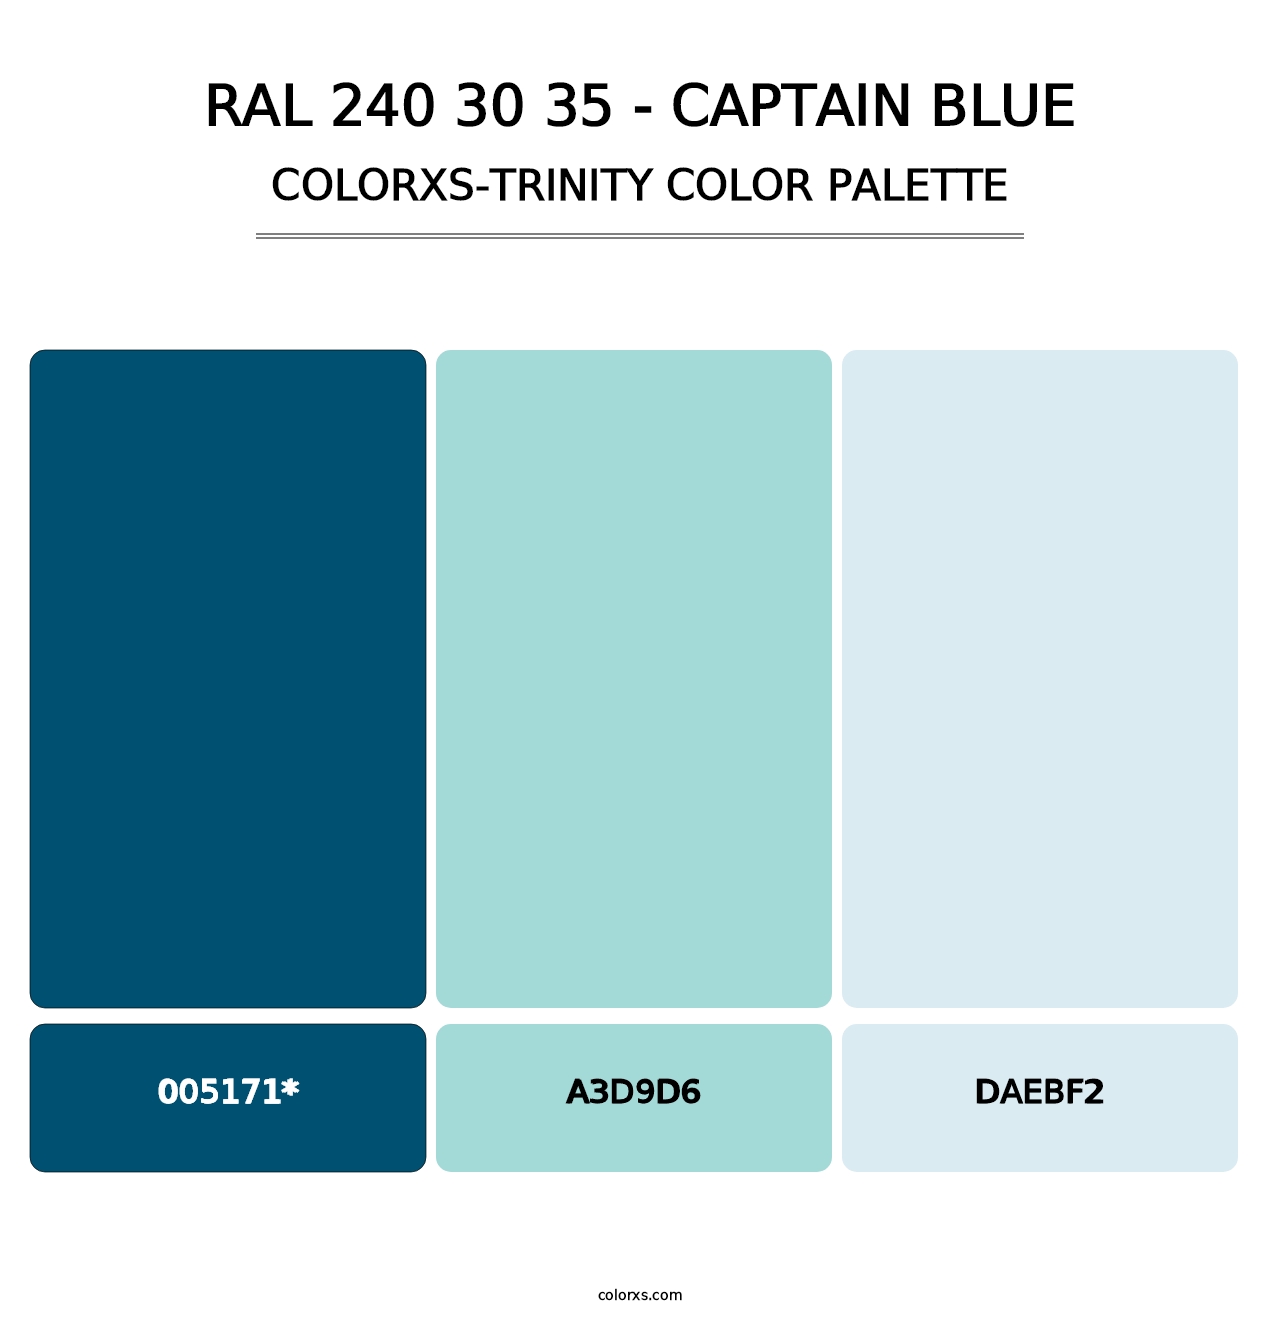 RAL 240 30 35 - Captain Blue - Colorxs Trinity Palette